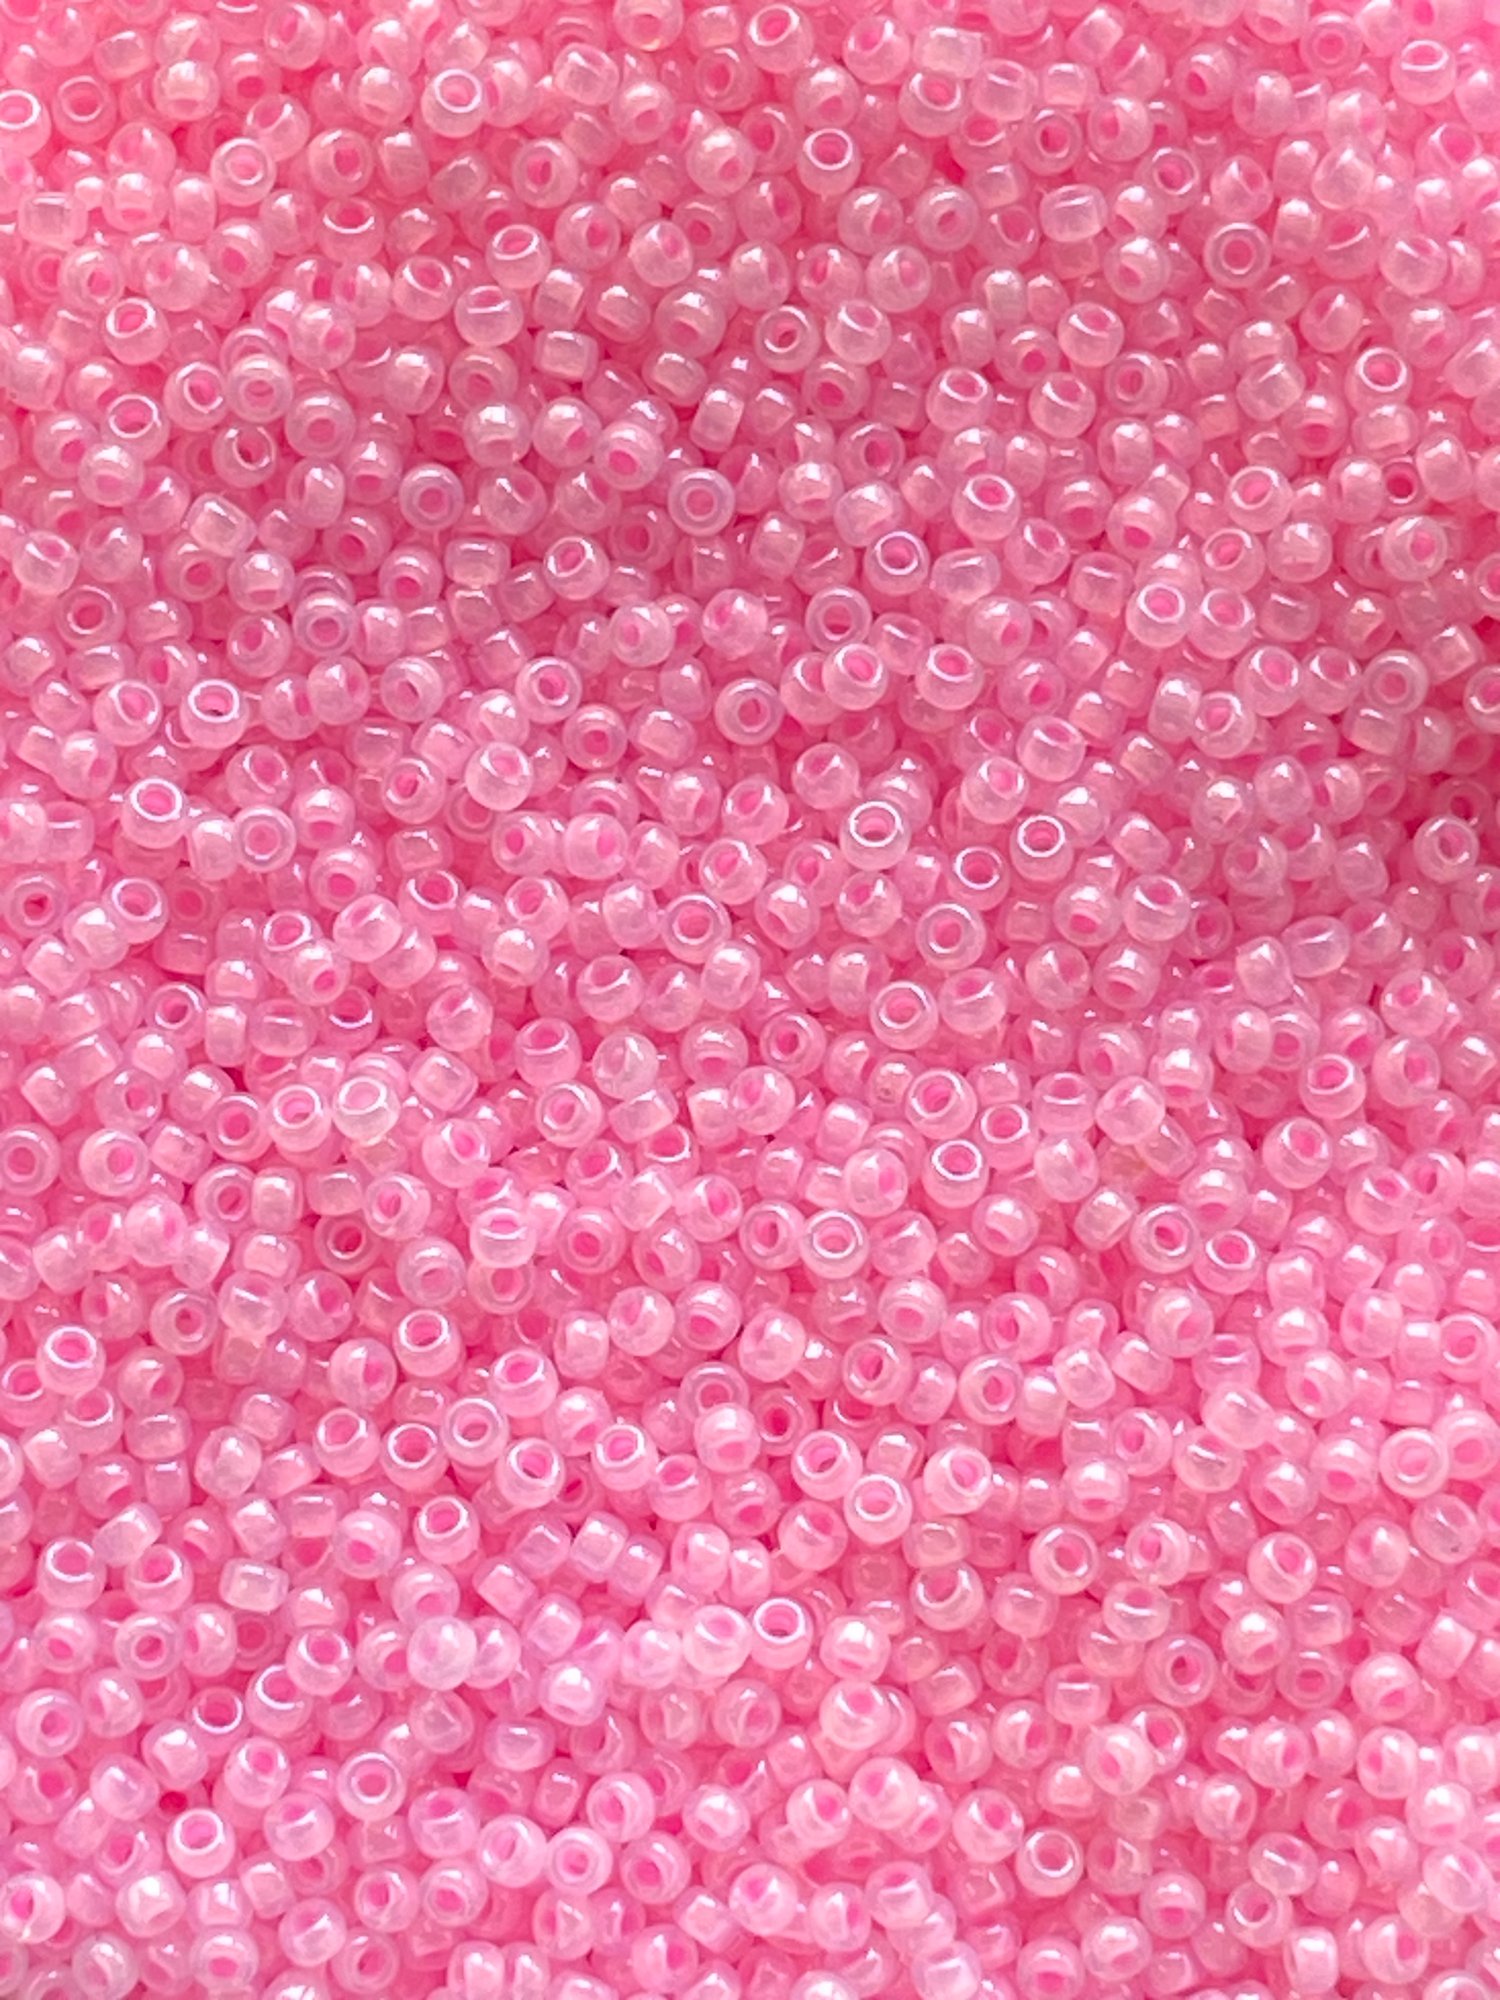 Ceylon soft baby pink, Miyuki seed beads